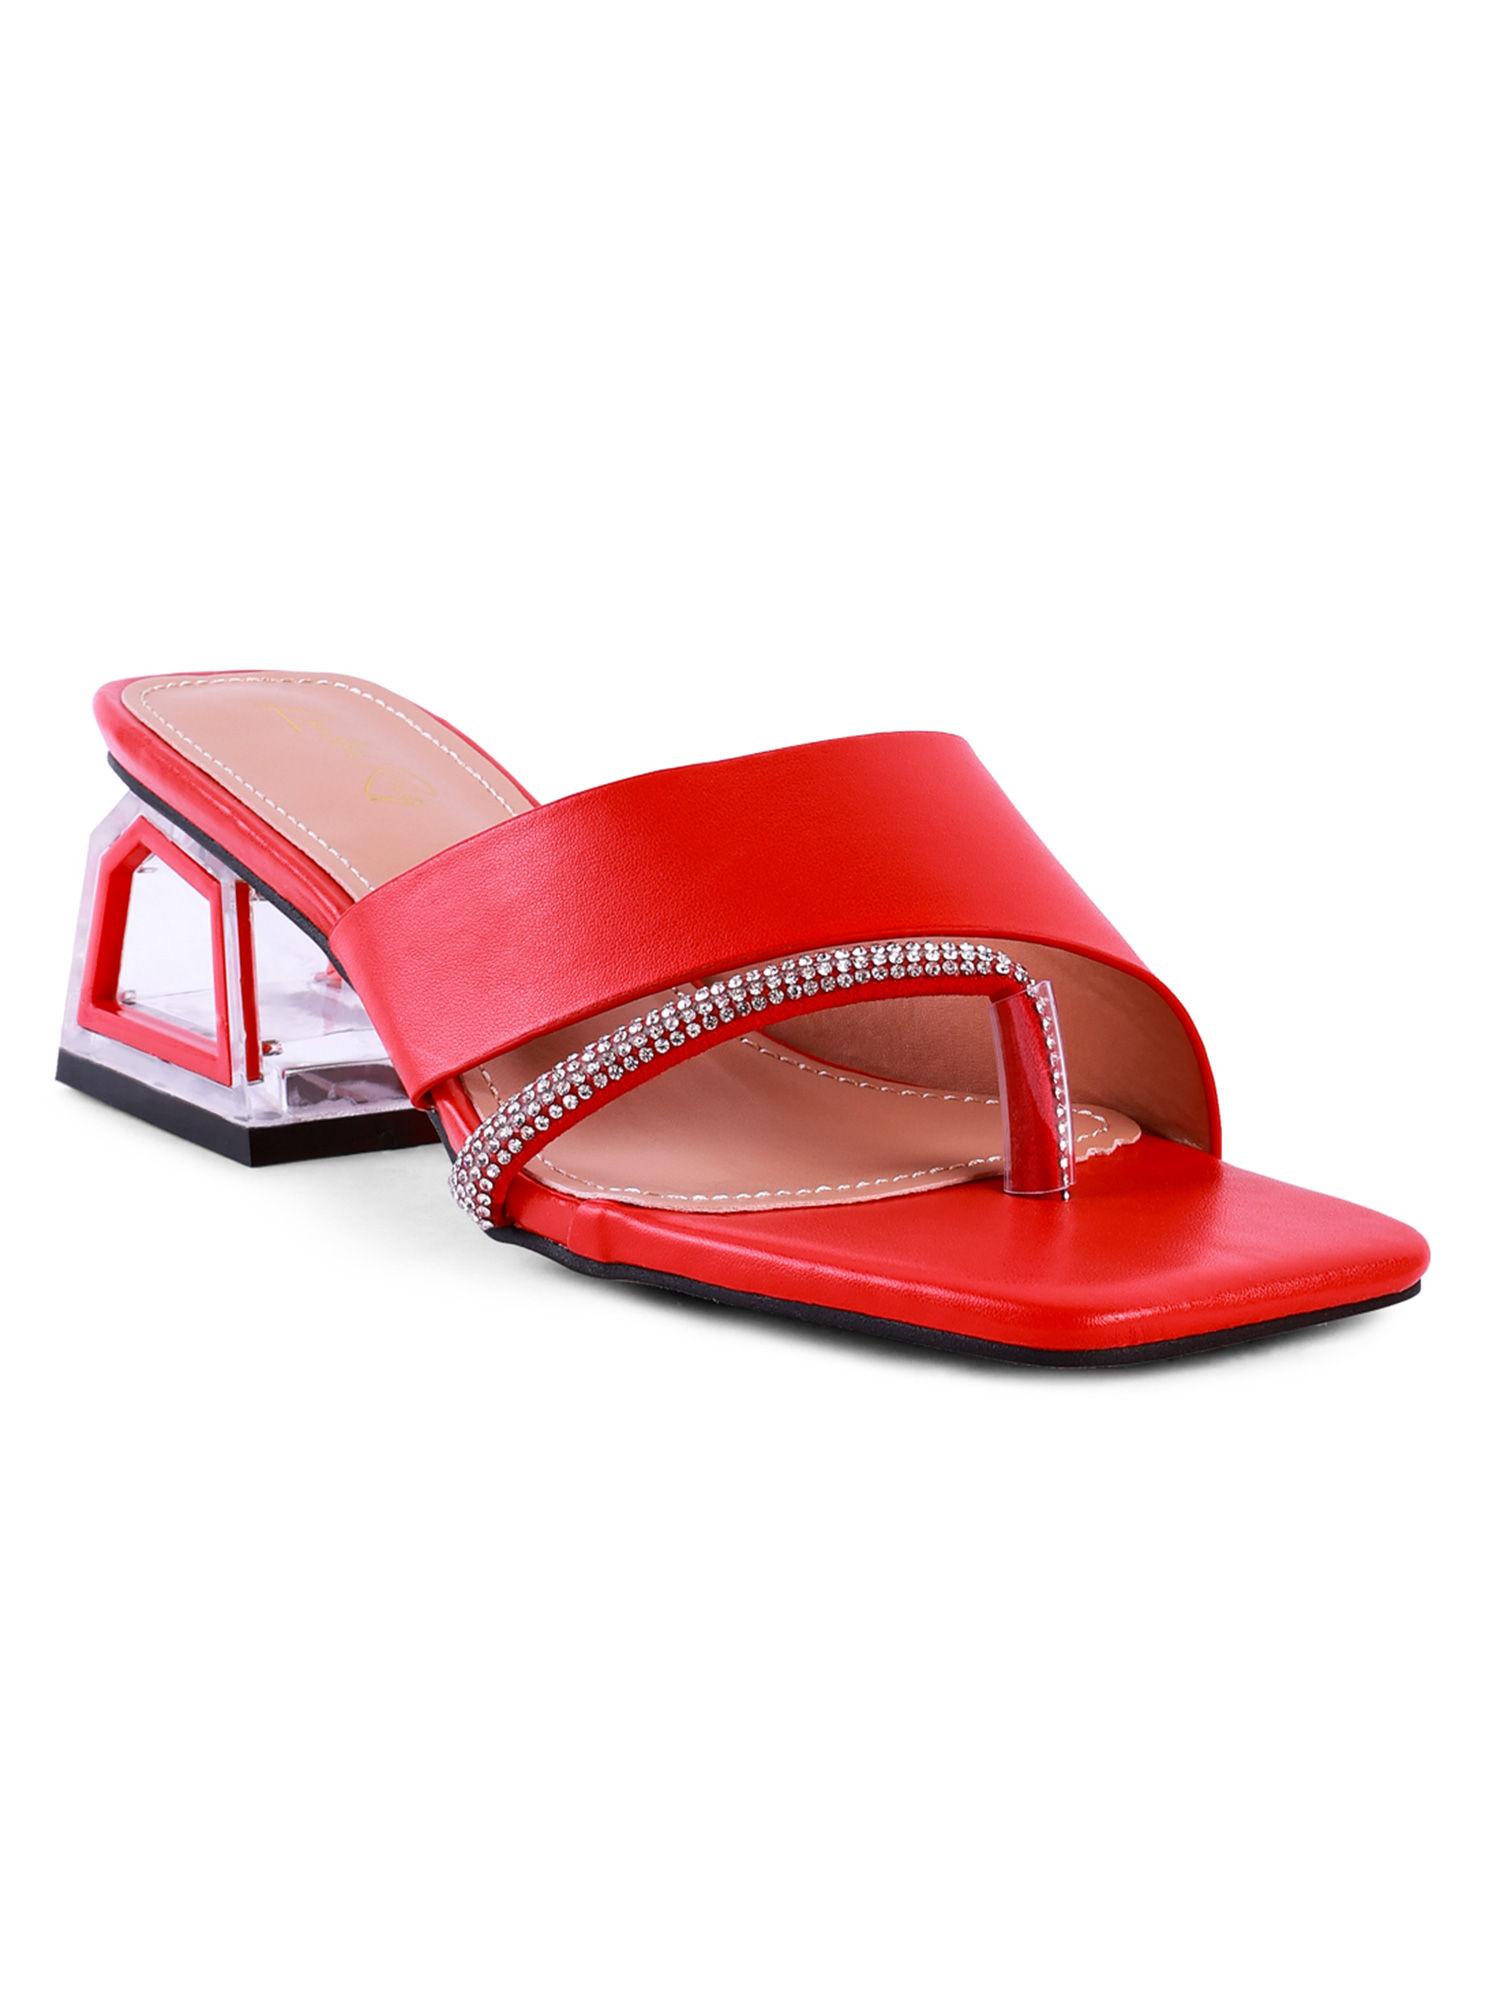 embellished red heels